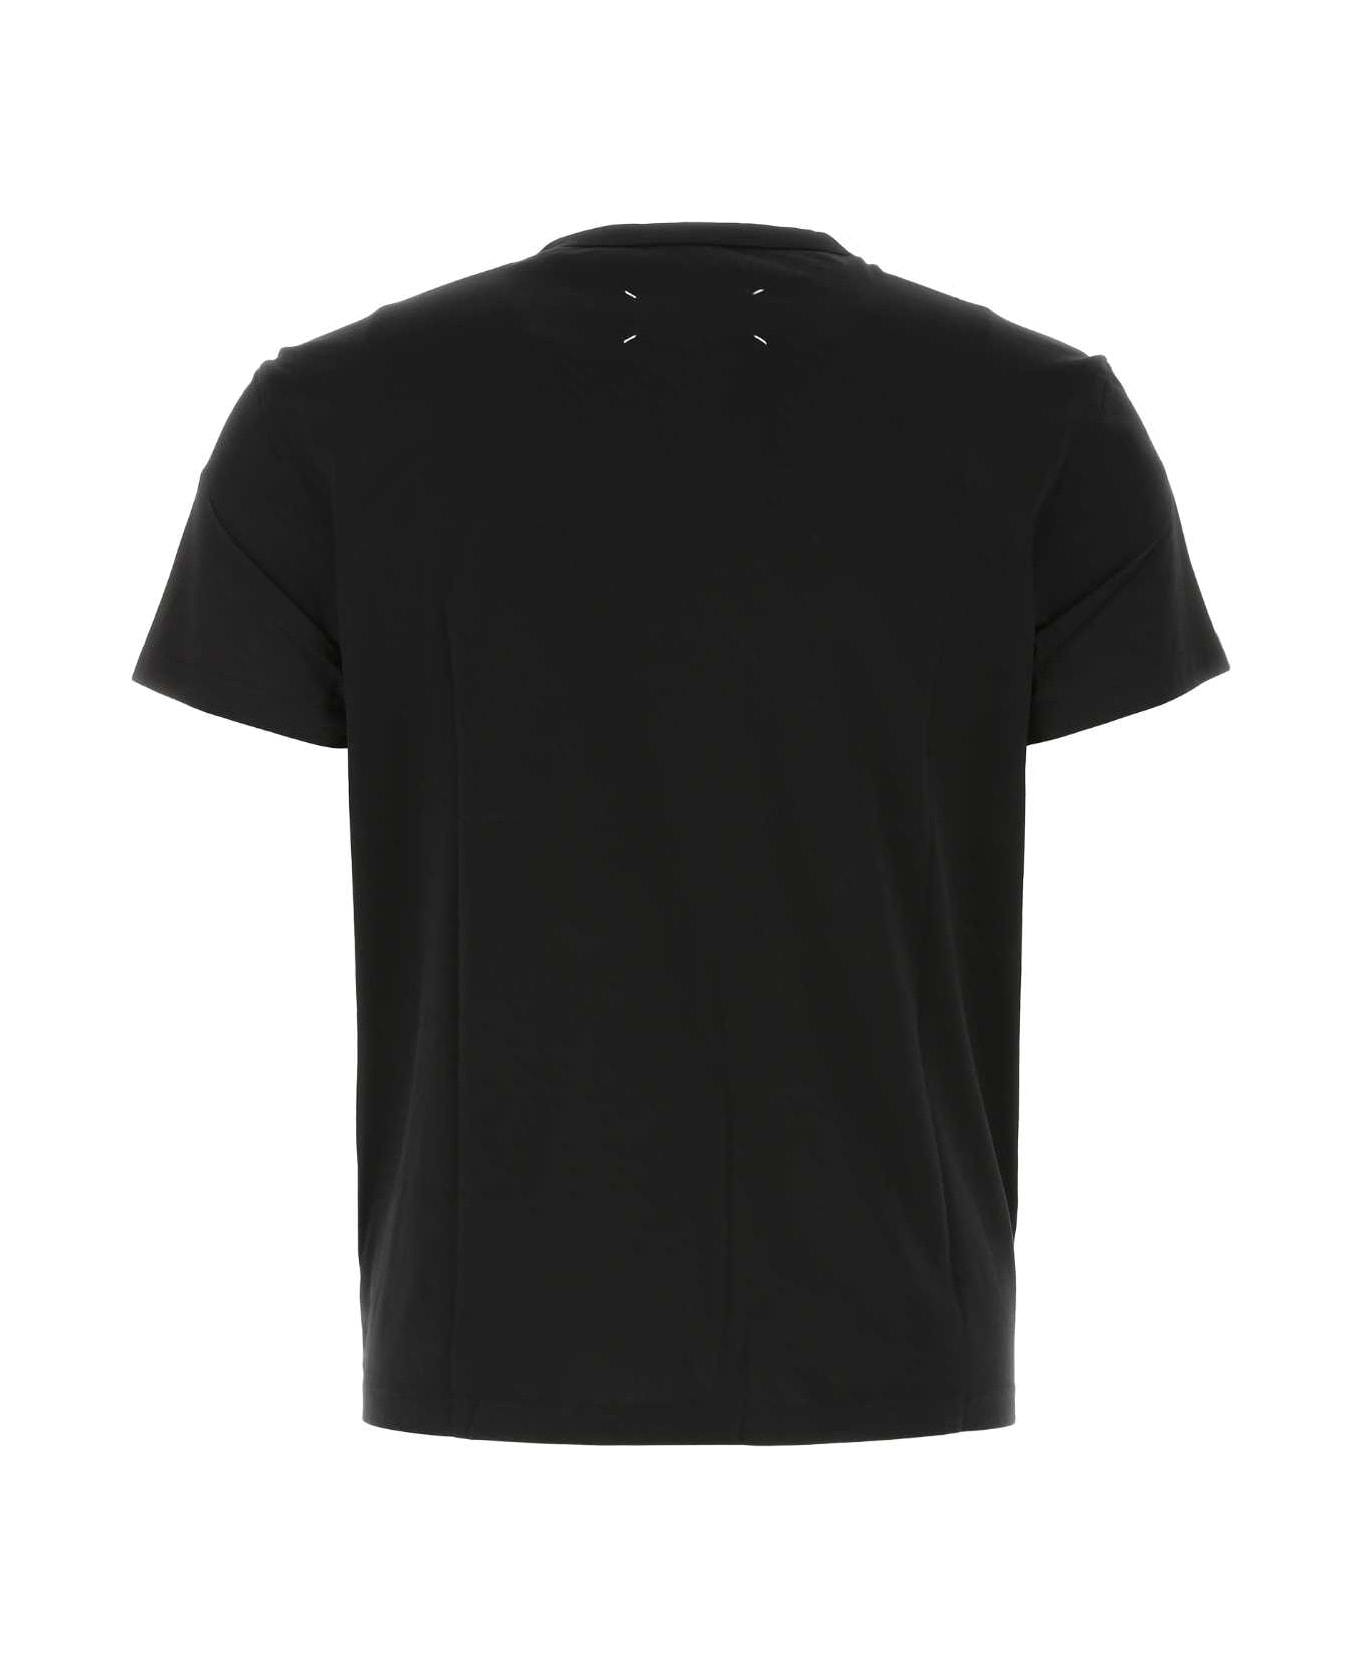 Maison Margiela Black Cotton T-shirt - 900